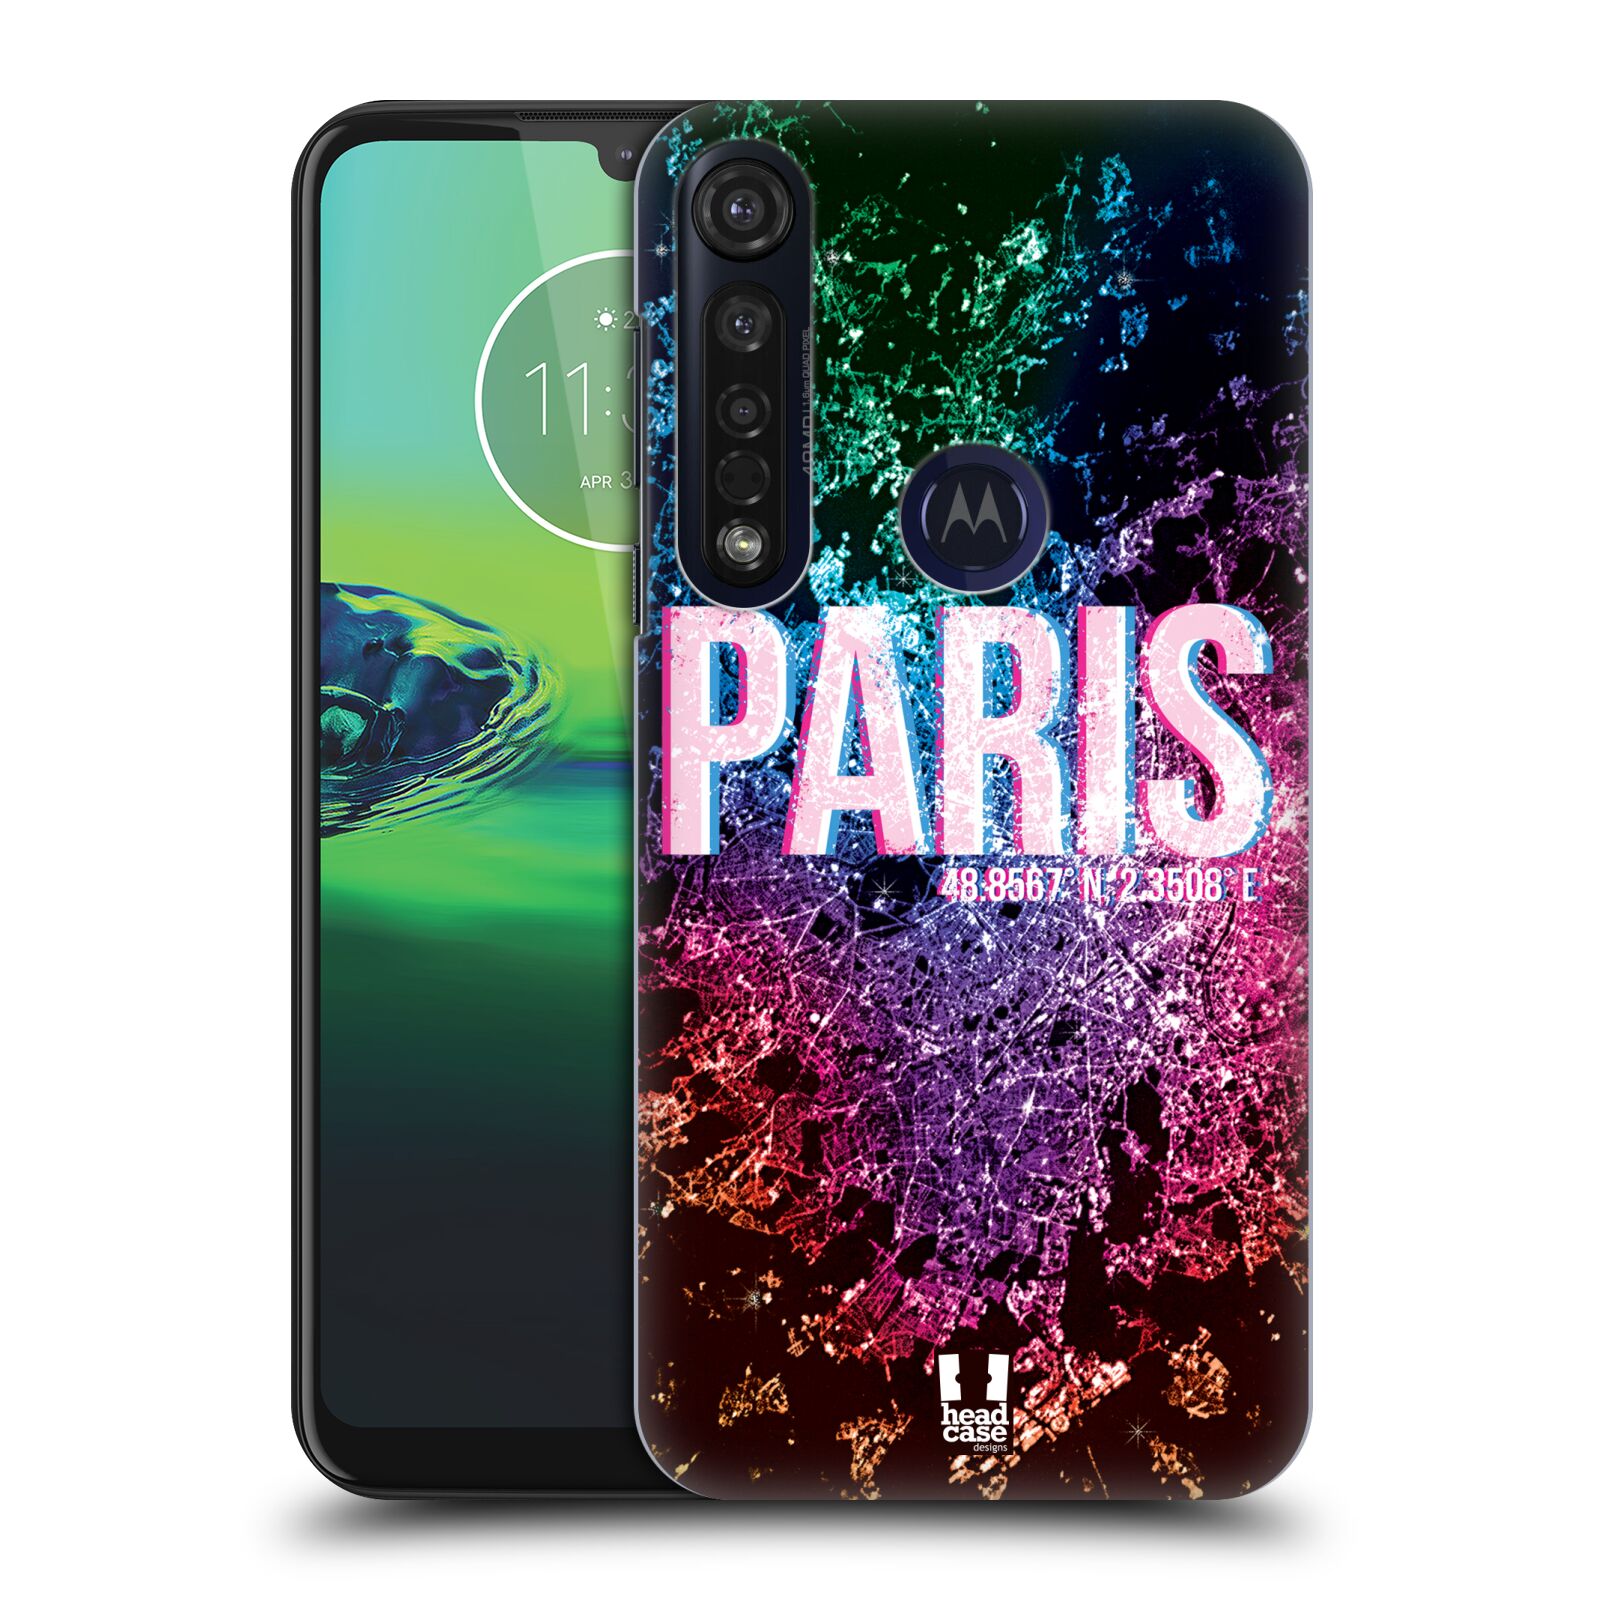 Pouzdro na mobil Motorola Moto G8 PLUS - HEAD CASE - vzor Světla známých měst, Satelitní snímky FRANCIE, PAŘÍŽ